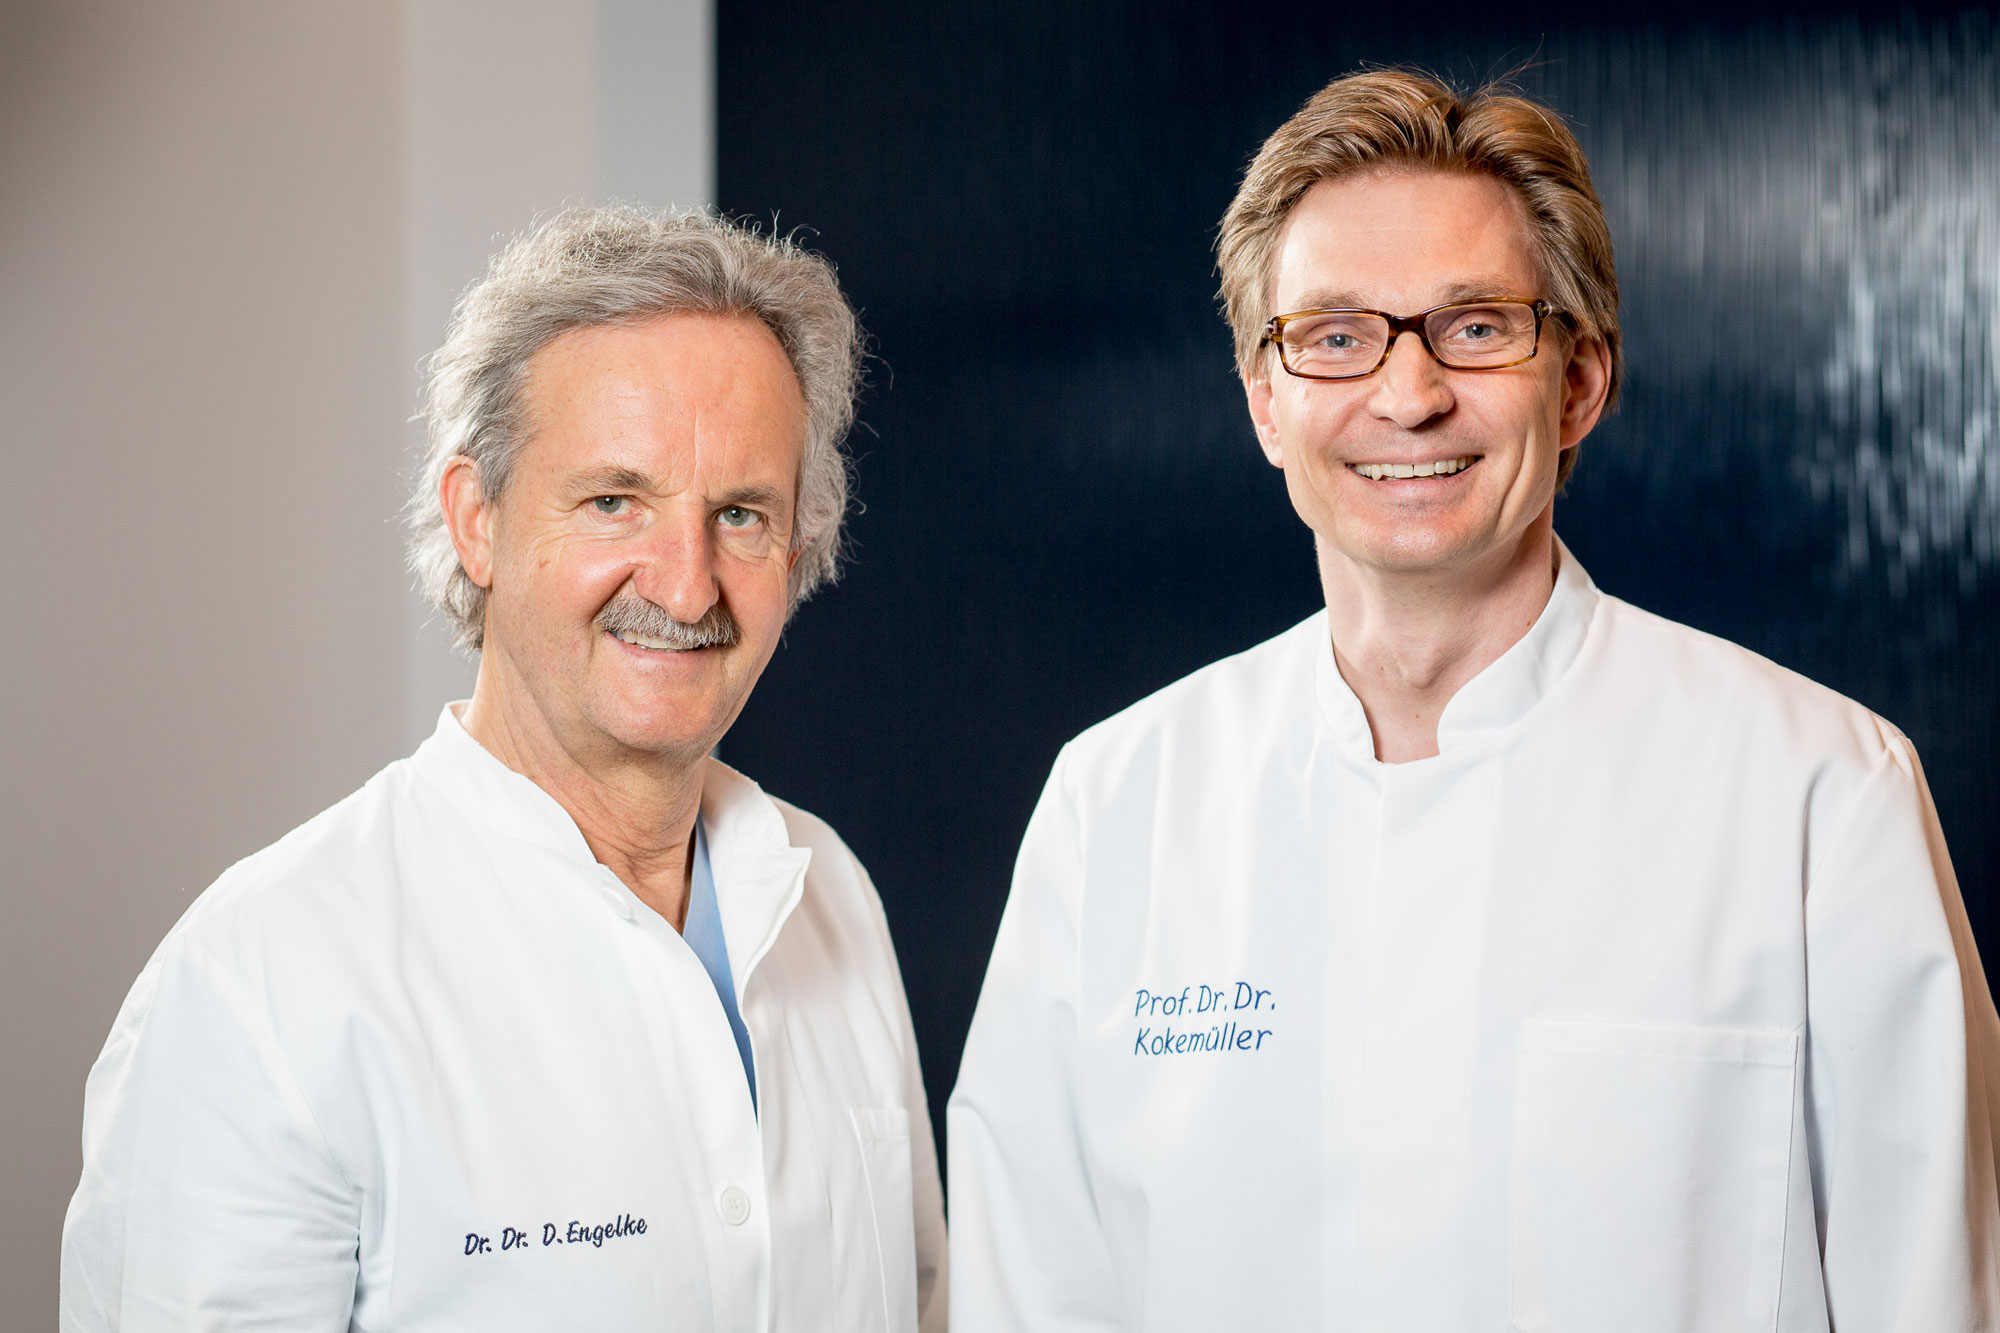 Prof. Dr. Dr. Kokemüller & Dr. Dr. Engelke (ang.) Zentrum für Mund-, Kiefer- & plastische Gesichtschirurgie,